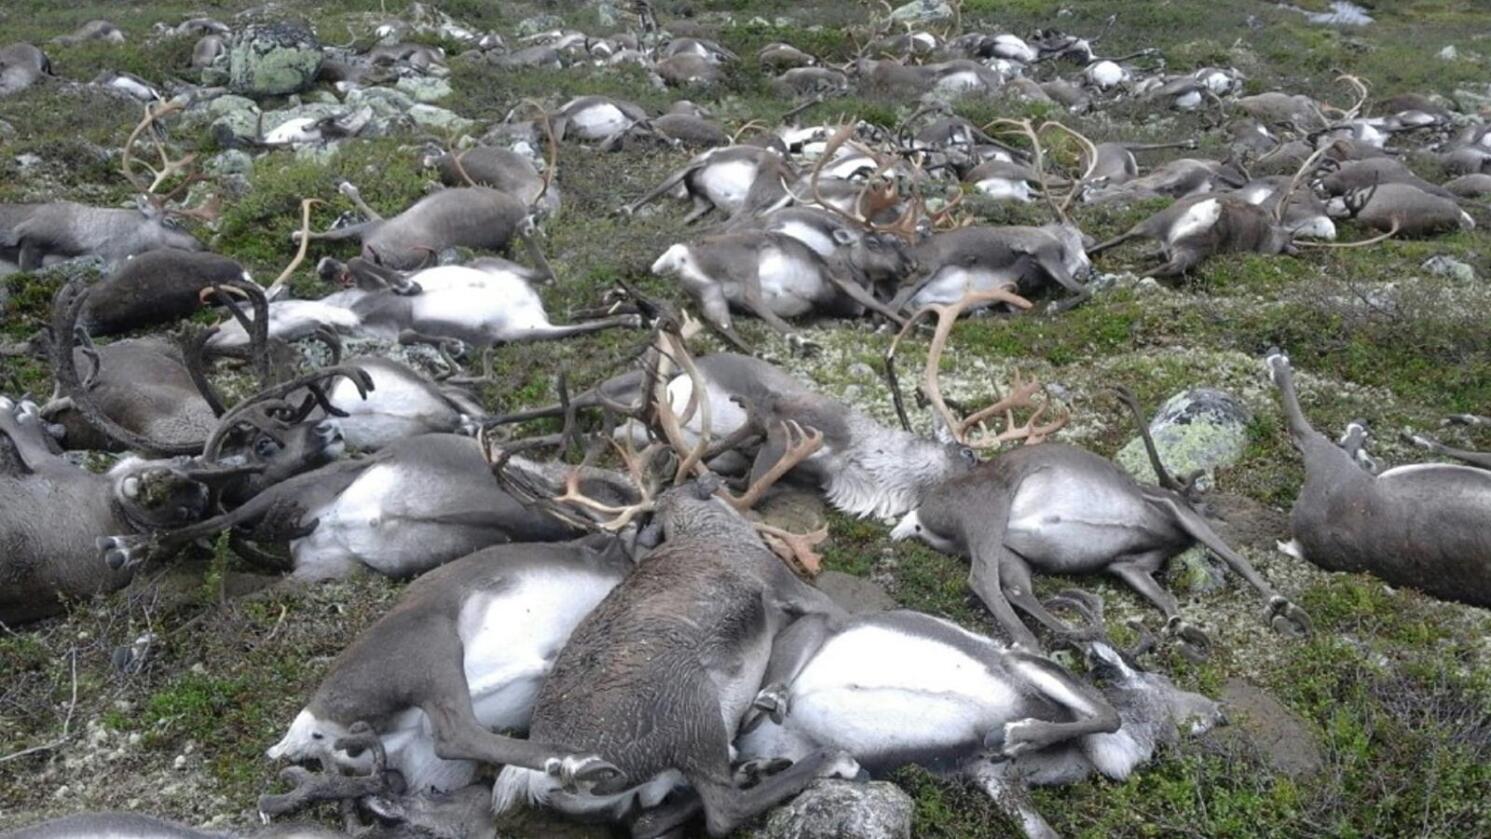 Lynnedslag er trolig årsaken til at 322 reinsdyr ble funnet døde på lite område sør på Hardangervidda. En jaktoppsynsmann oppdaget dyretragedien på en rutinetur i fjellet. Foto: Håvard Kjøntvedt / Statens naturoppsyn / NTB scanpix